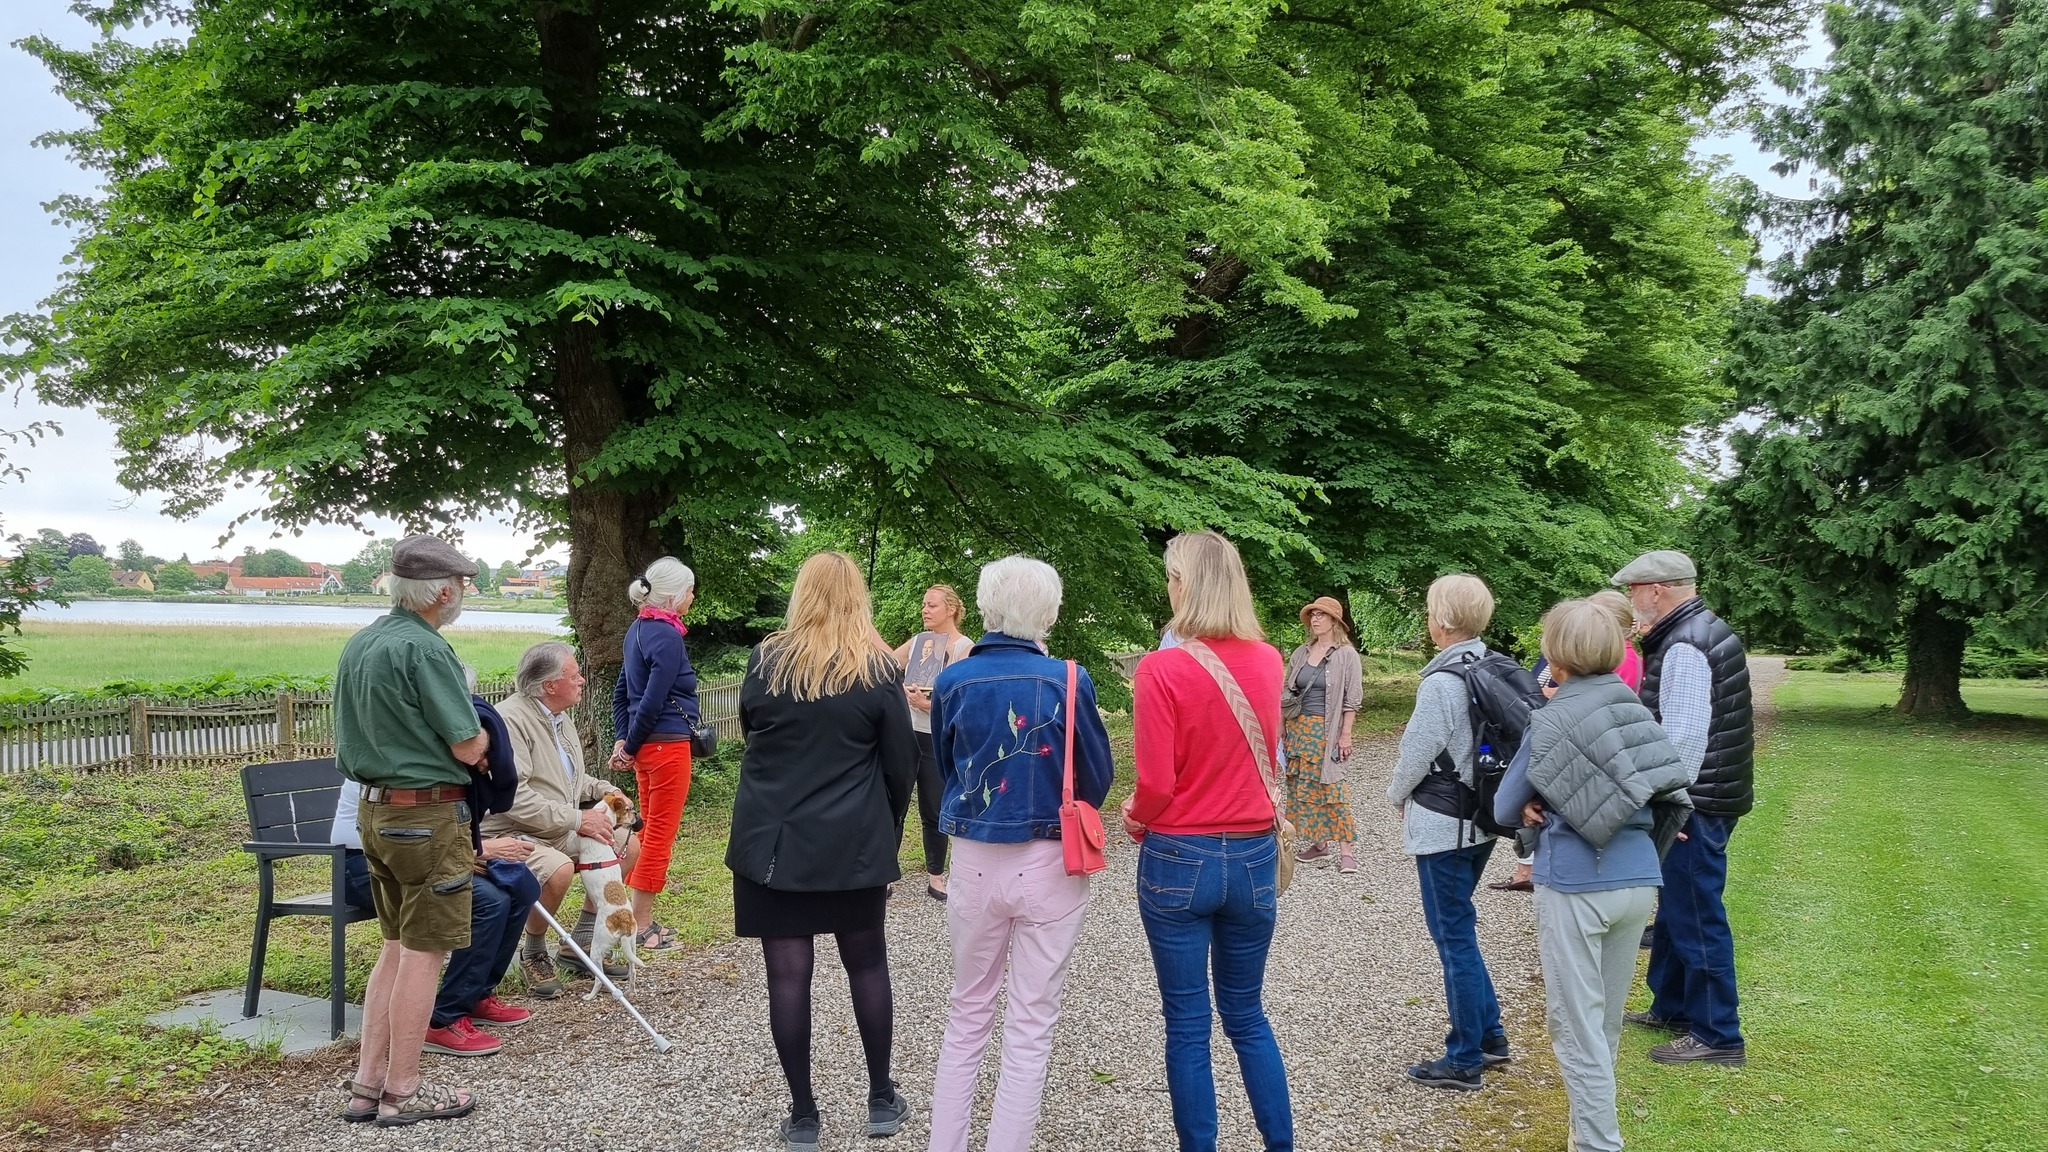 Tag med på litteraturvandring i Nysø Have, og hør om de forskellige forfattere, der kom hos familien Stampe i guldalderen. Fotograf: Kristina Kingo.